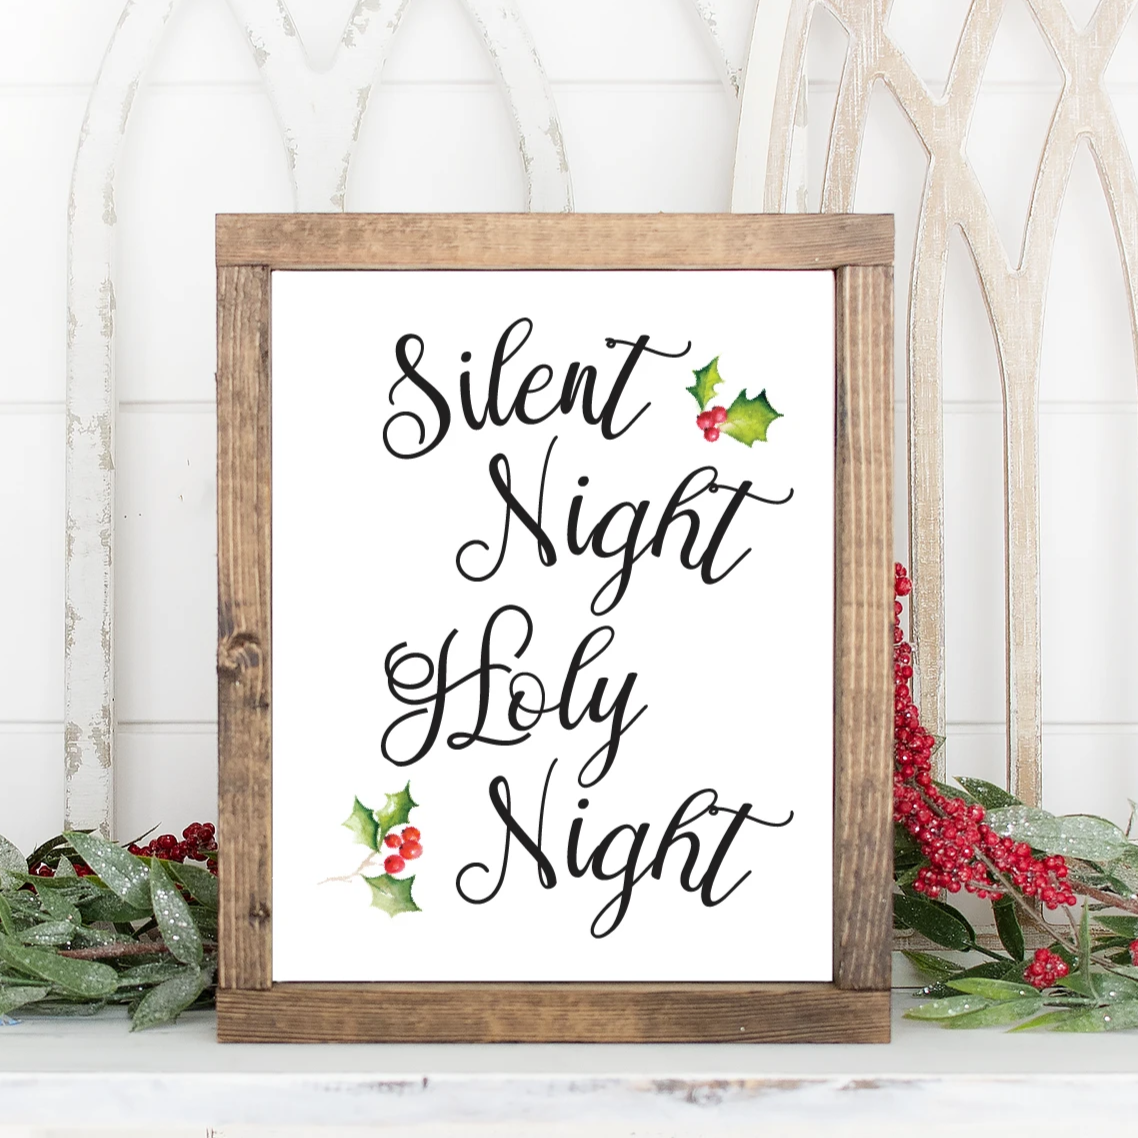 Silent Night Holy Night Christmas Printable